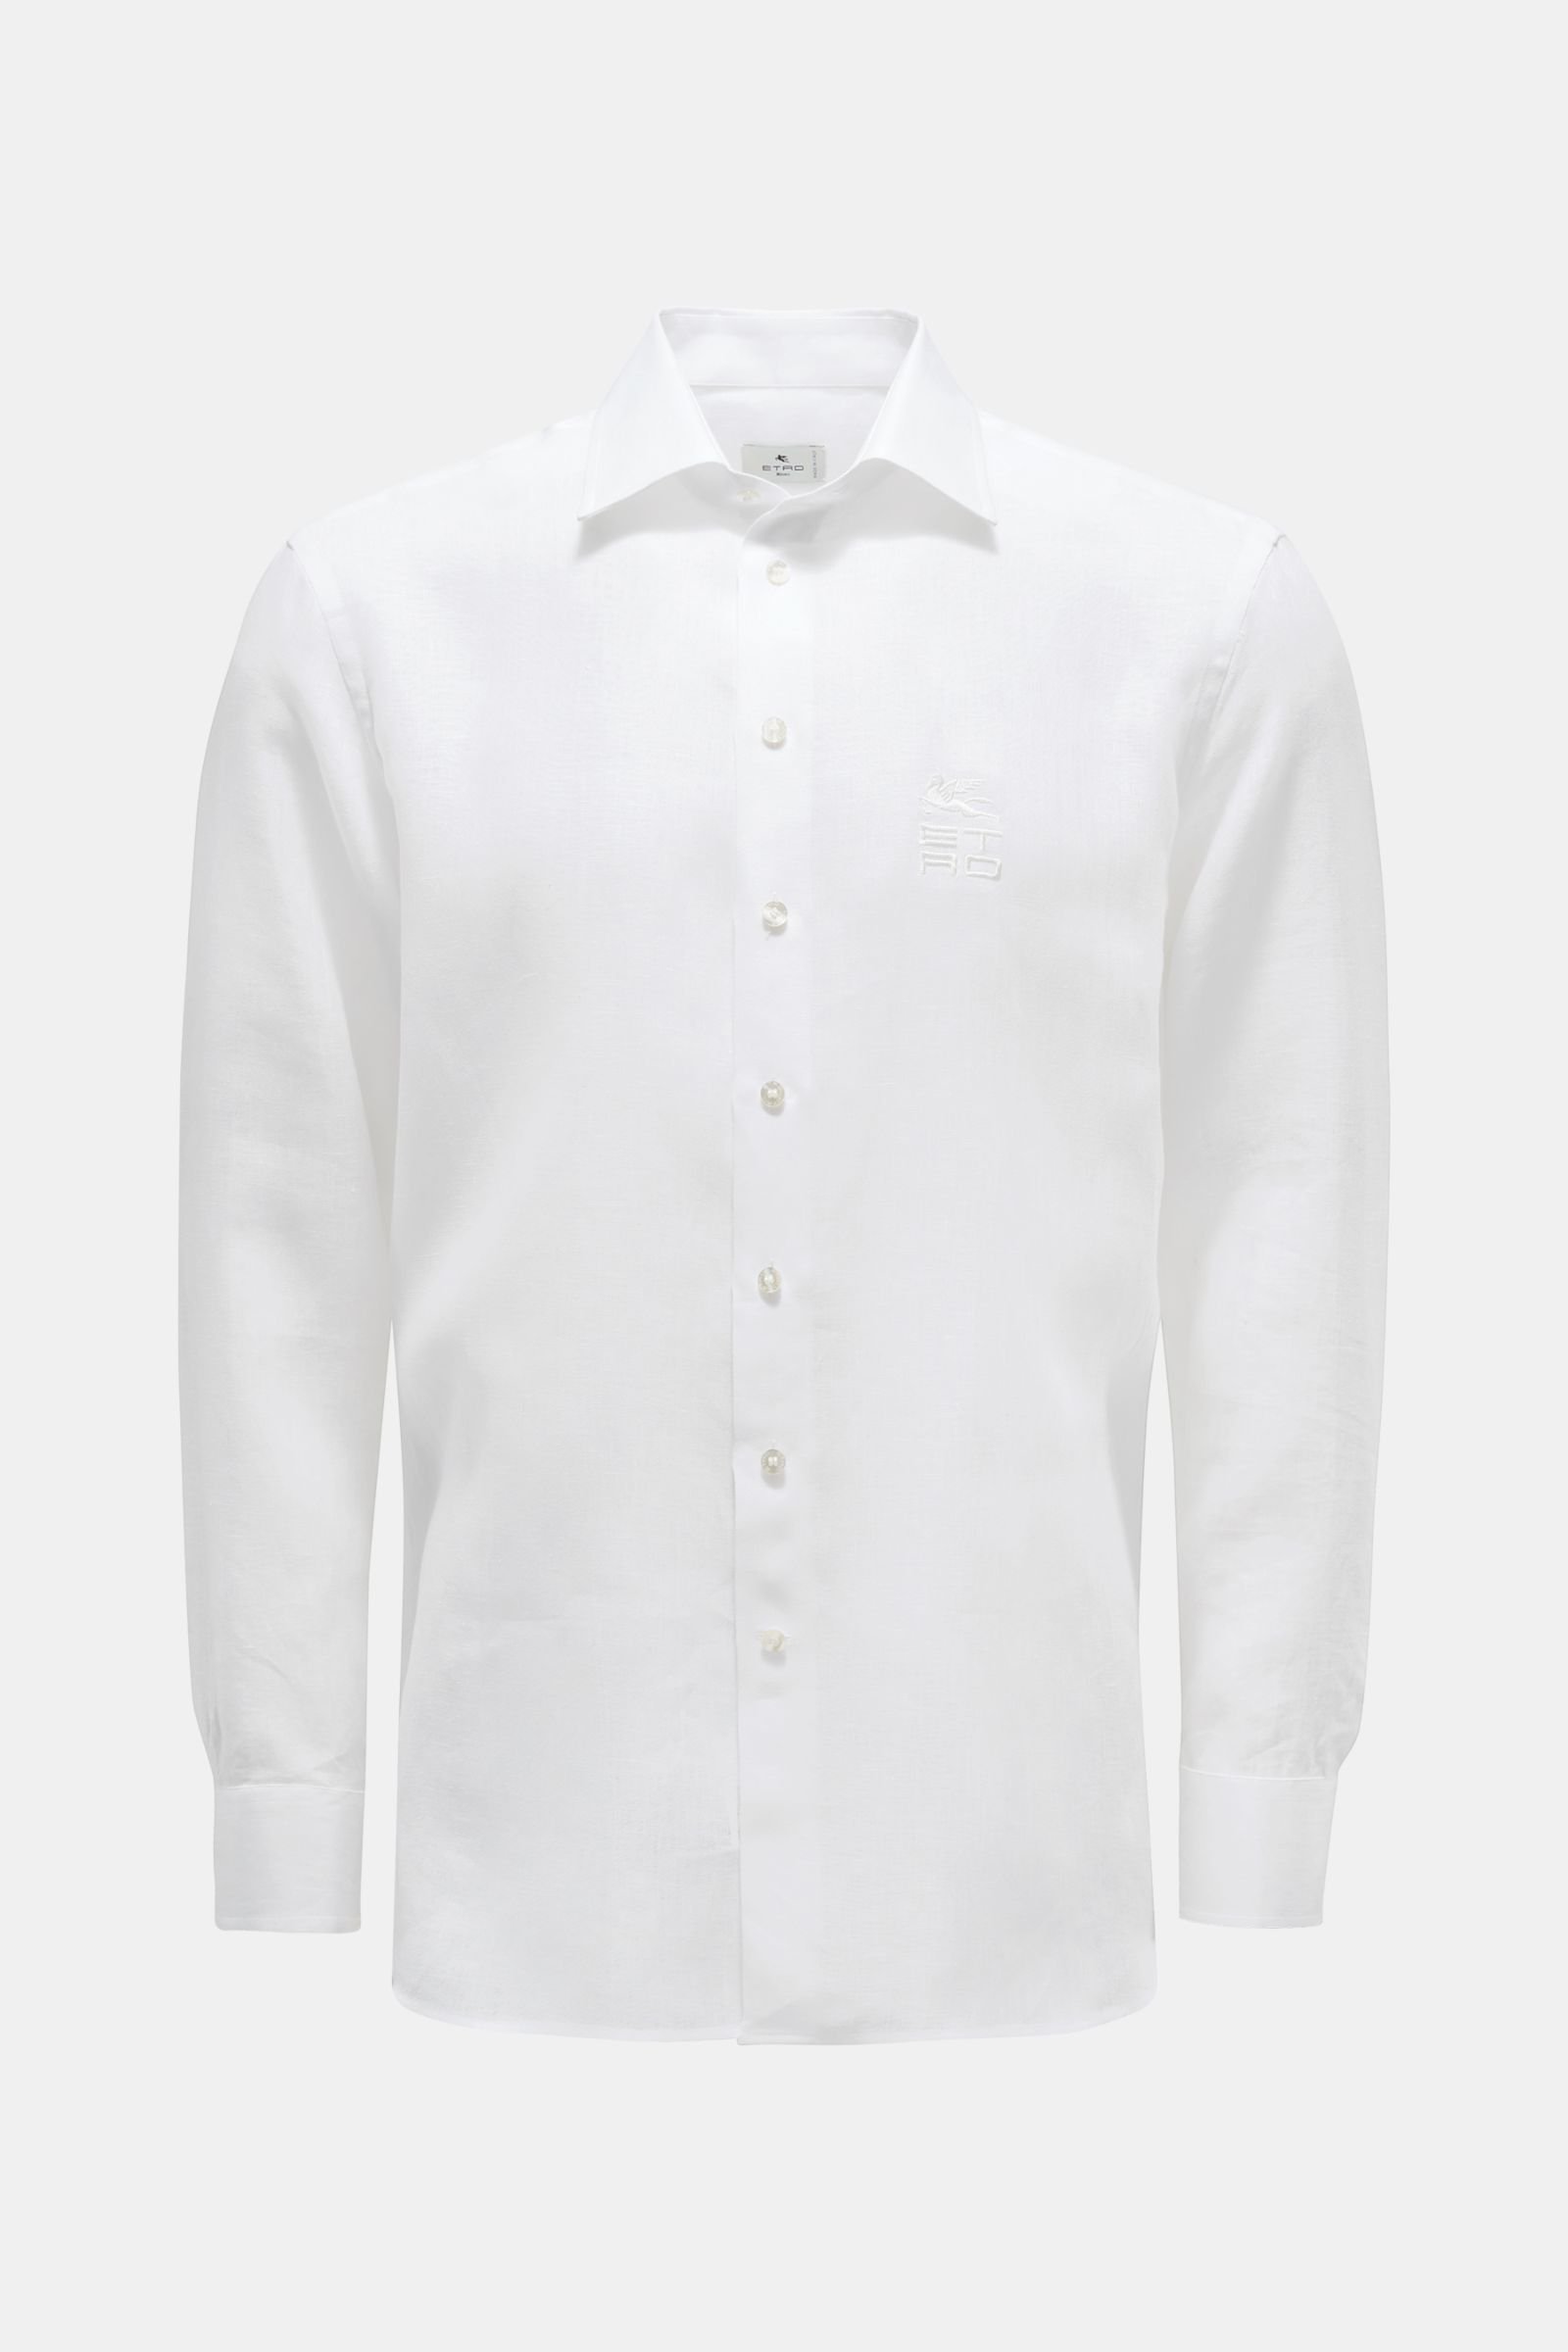 Linen shirt Kent collar white